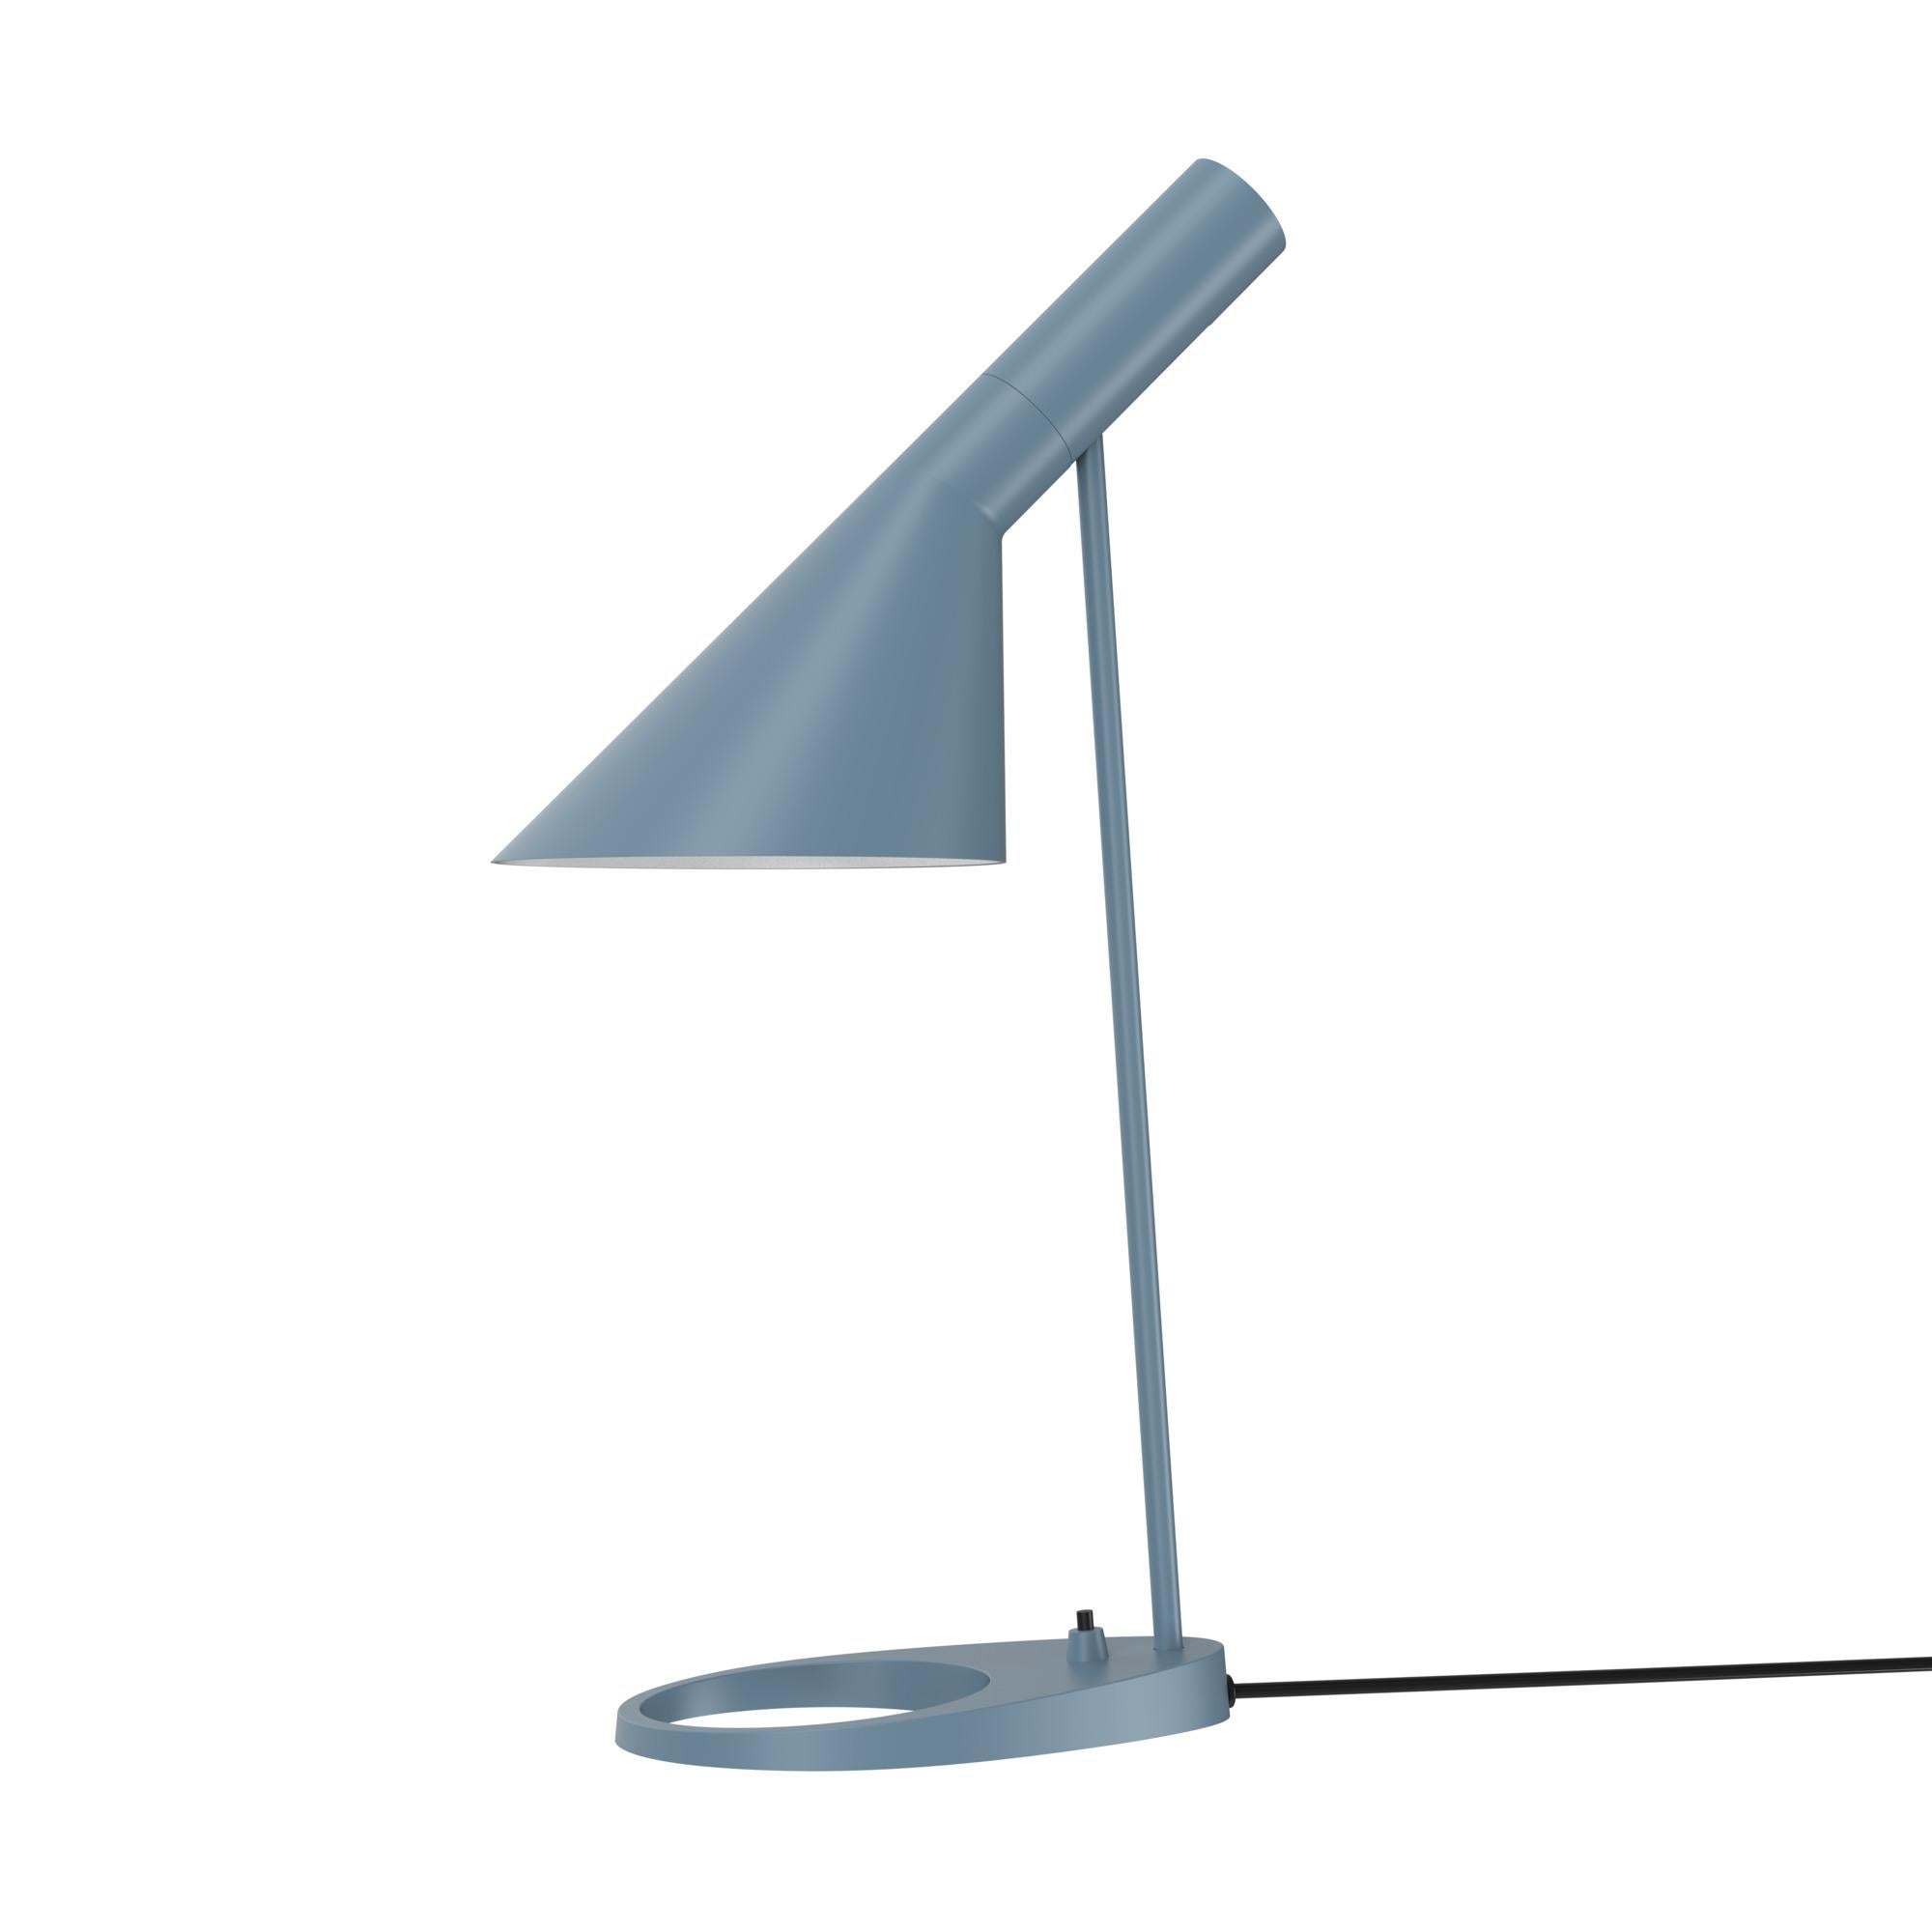 Arne Jacobsen AJ Table Lamp in Warm Grey for Louis Poulsen For Sale 3